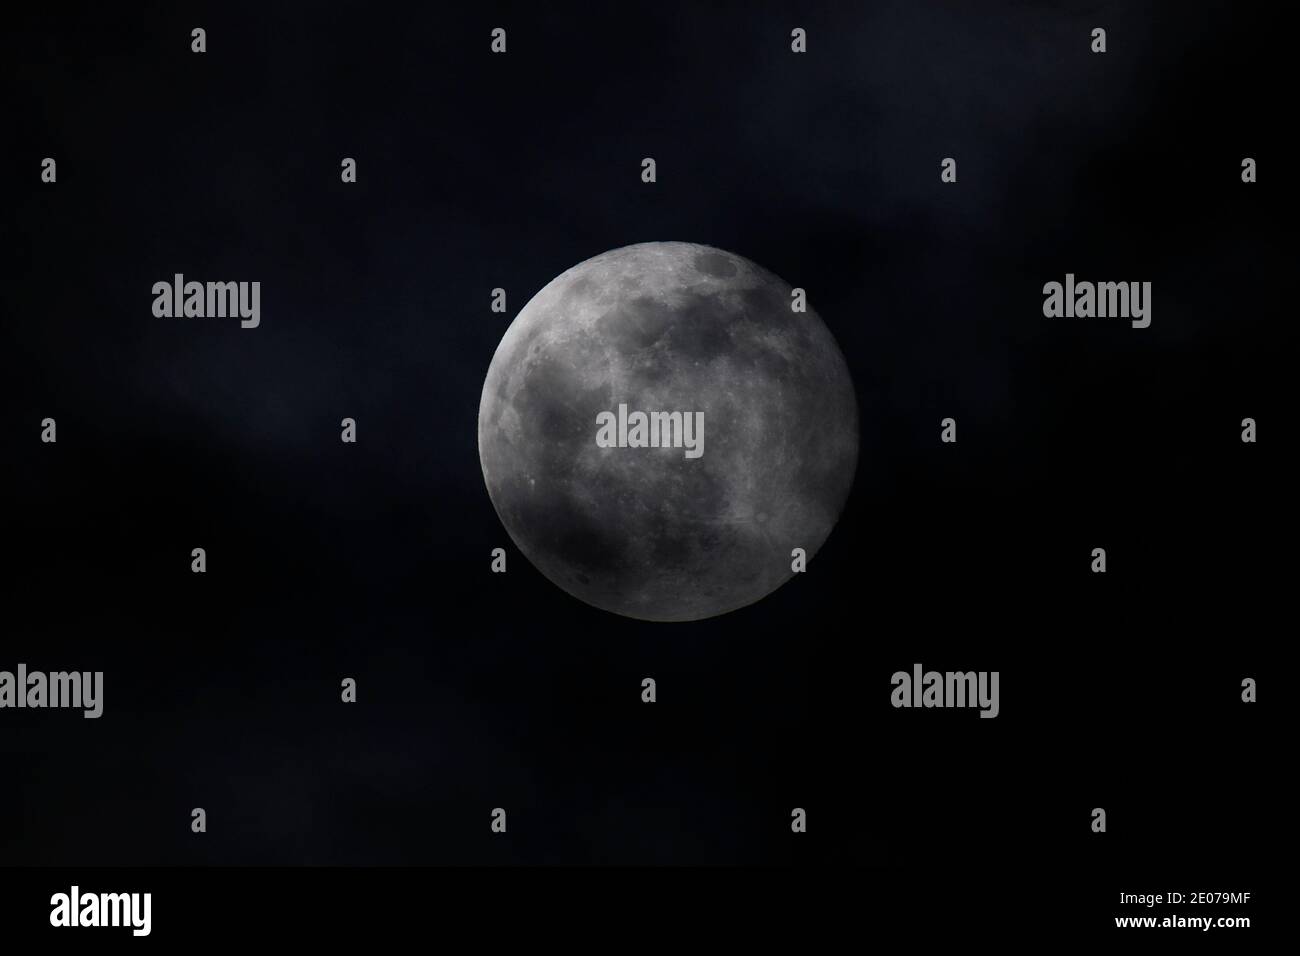 Wien, Österreich. 30. Dezember 2020. Der Vollmond strahlte über Wien als sogenannter "kalter Mond" vom Firmament aus. Quelle: Franz Perc / Alamy Live News Stockfoto